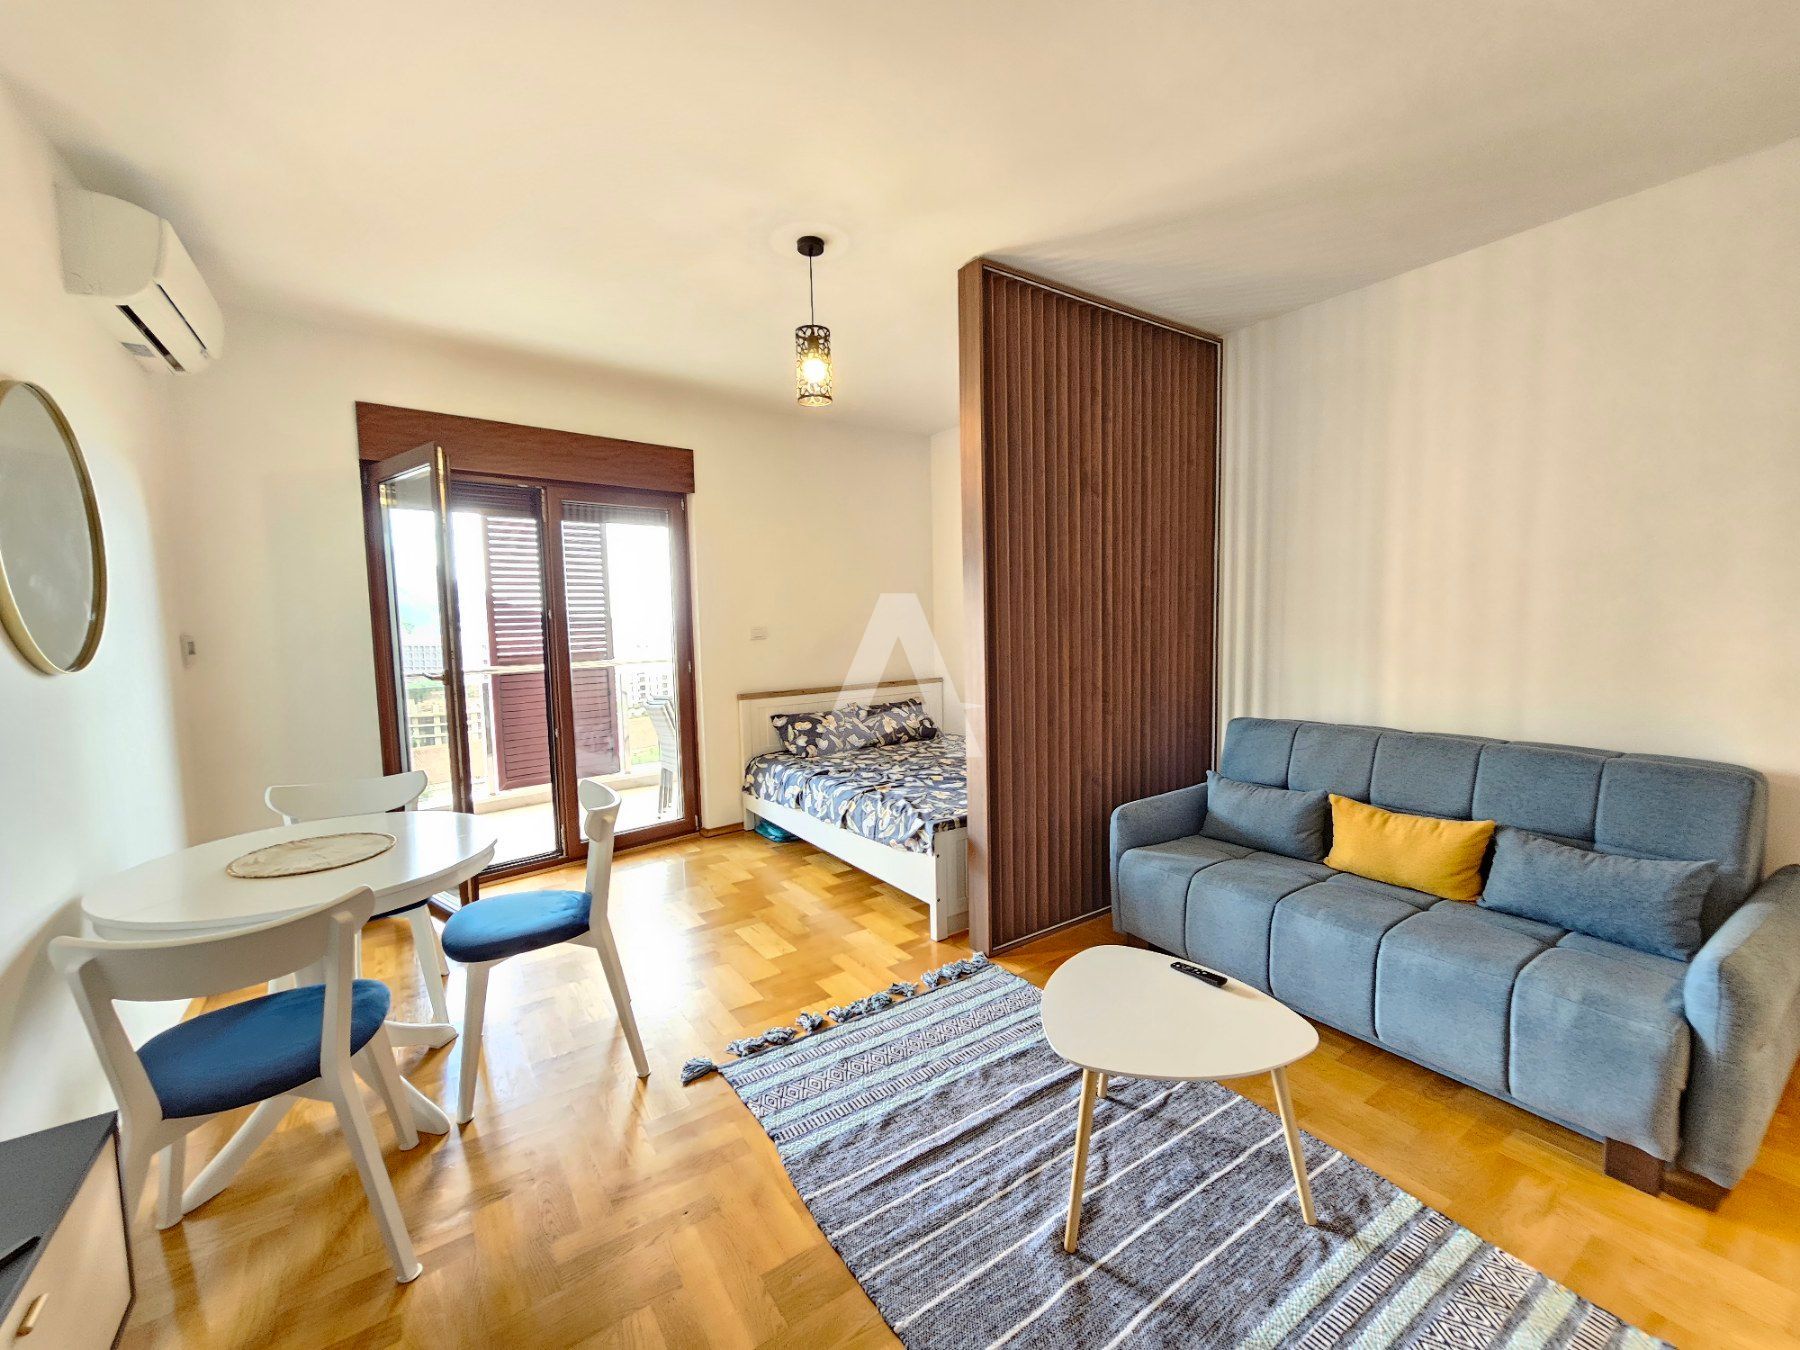 amfora/Moderno opremljen studio apartman sa pogledom na more,Becici (na duzi period,dostupan od 01.09)